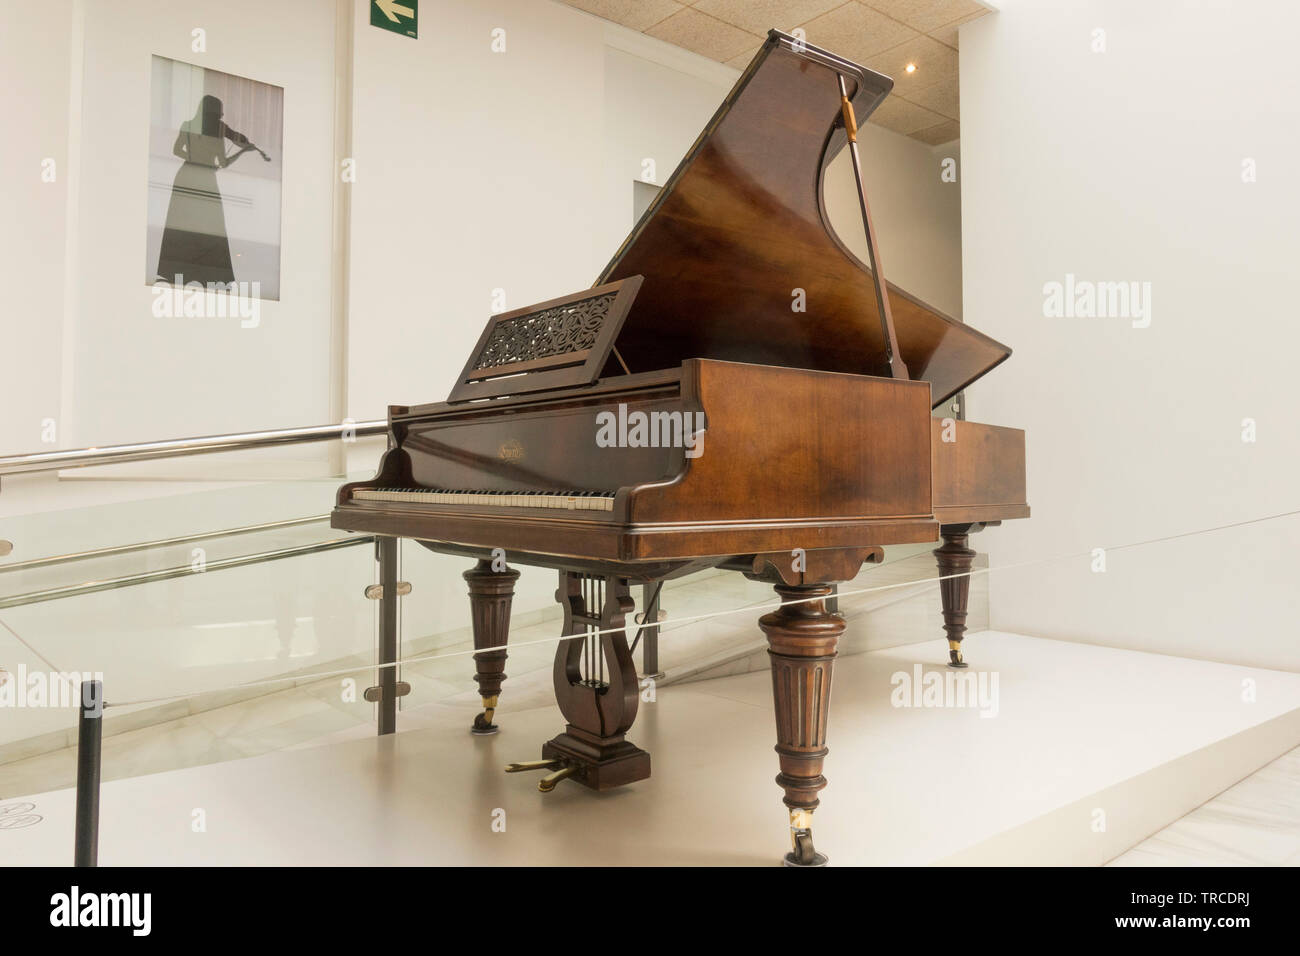 Interactive Music Museum, Museo Interactivo de la Música in Malaga, Andalusia, Spain. Stock Photo